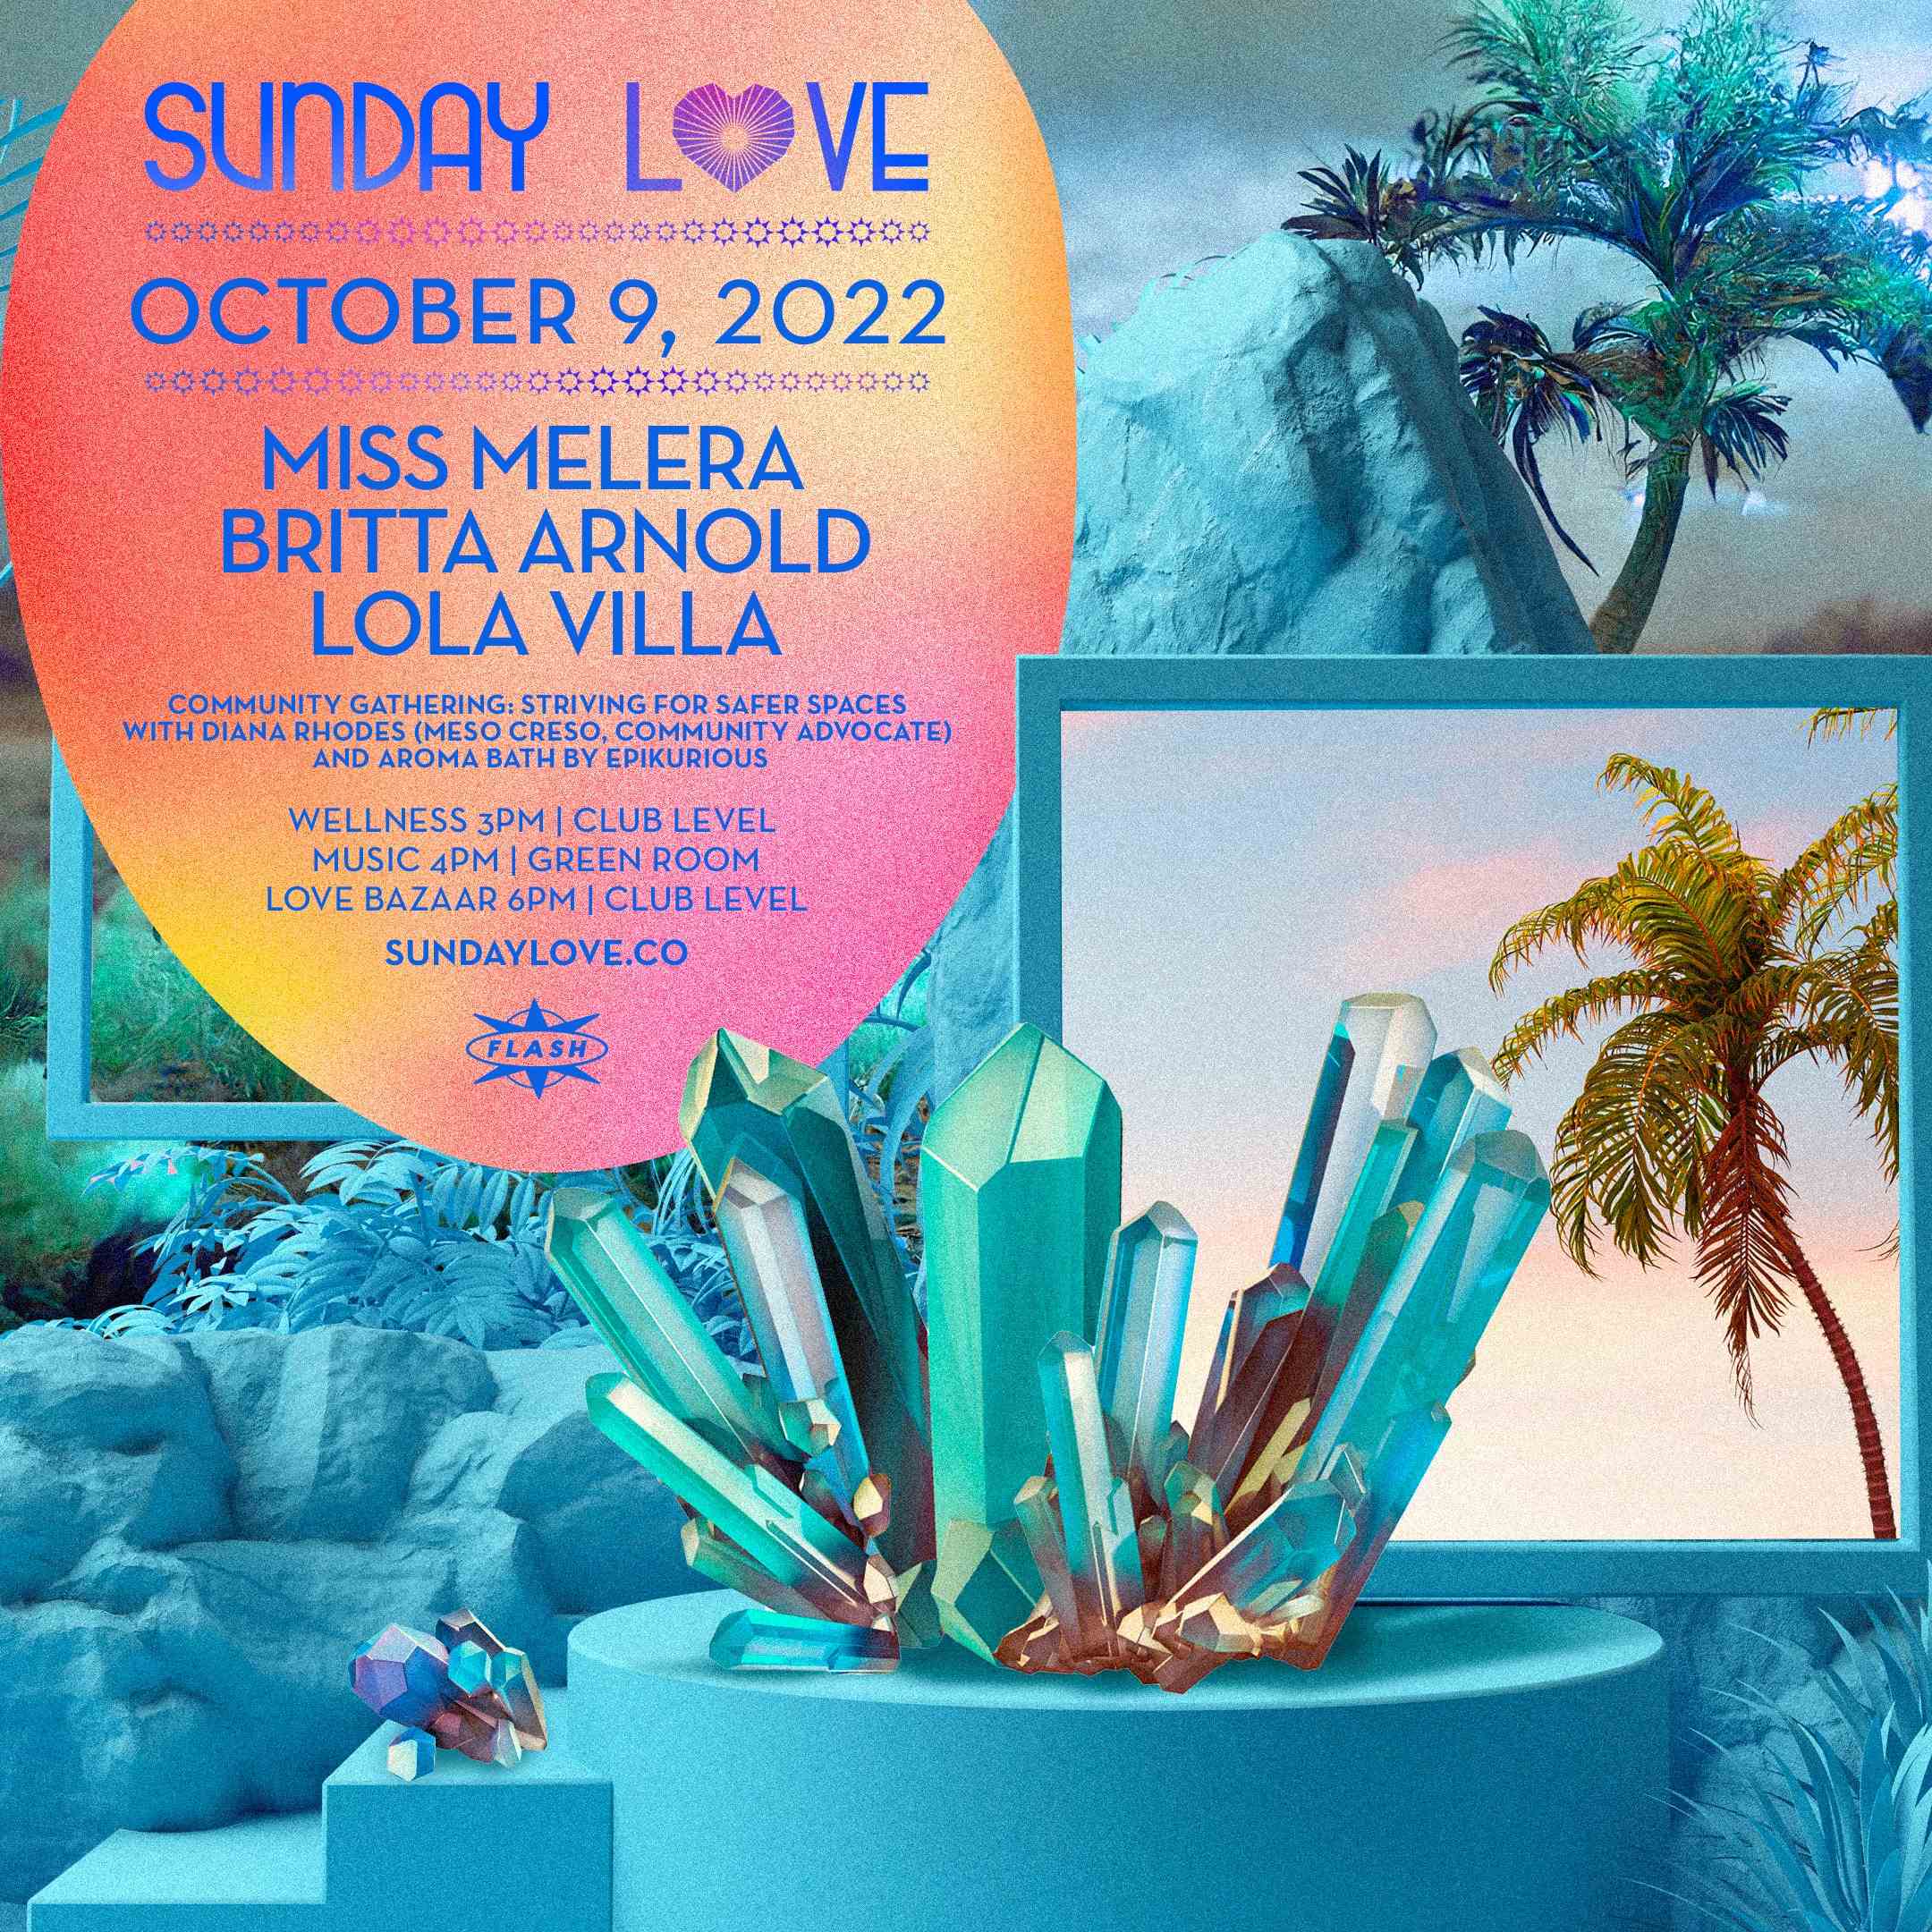 Sunday Love: Miss Melera - Britta Arnold - Lola Villa event thumbnail